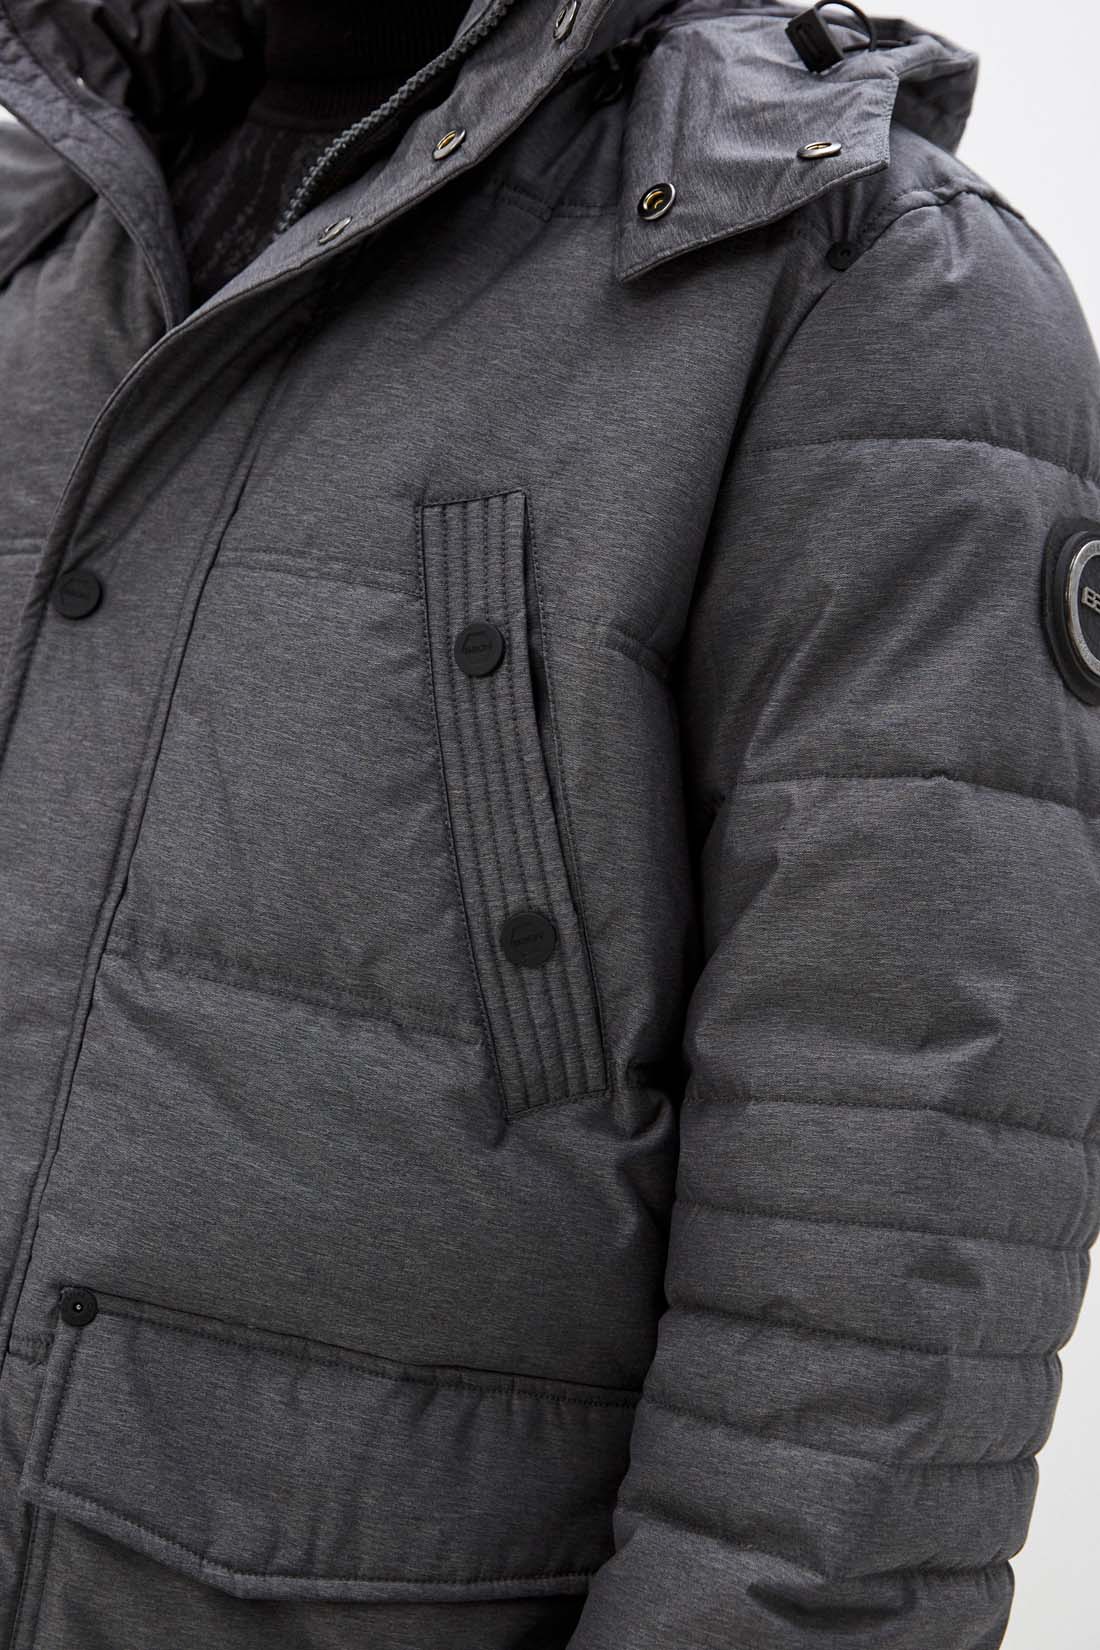 Куртка (Эко пух) (арт. baon B541507), размер S, цвет marengo melange#ebeeed Куртка (Эко пух) (арт. baon B541507) - фото 3